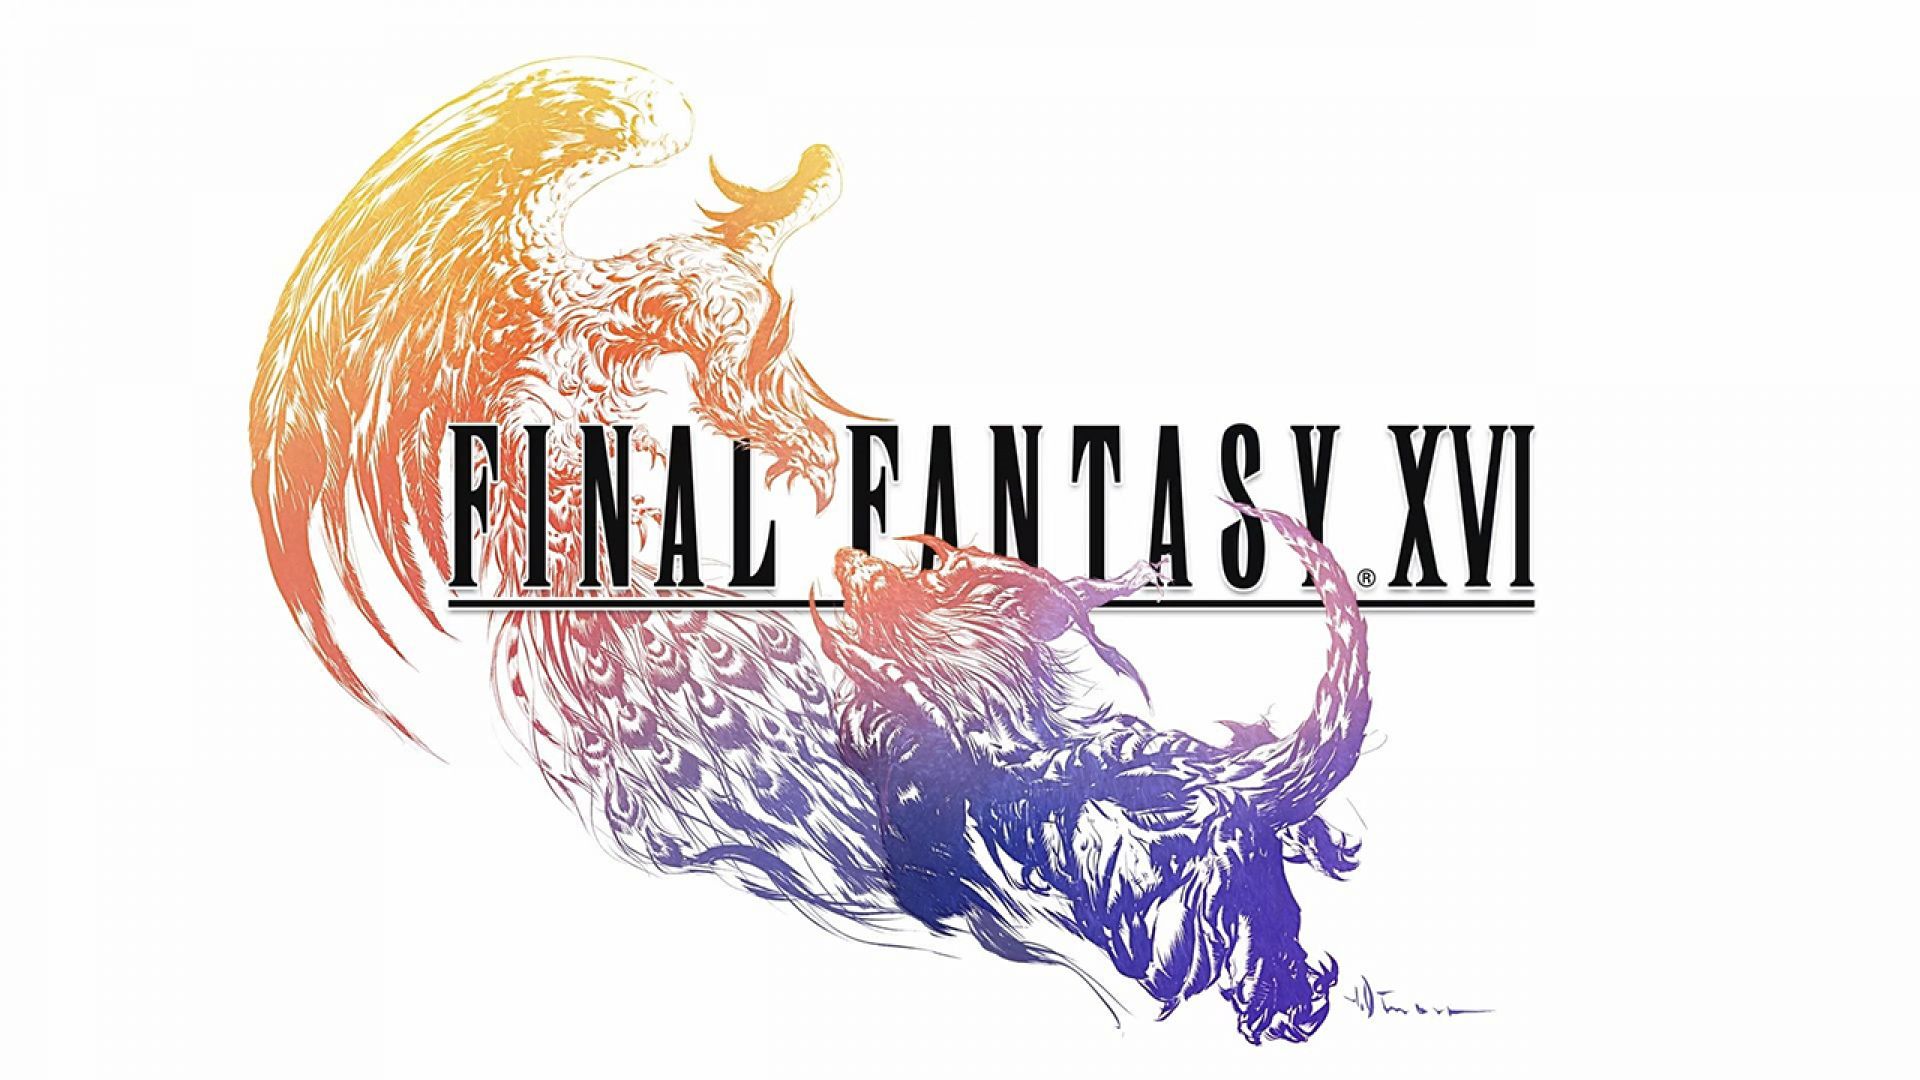 تهیه کننده عنوان Final Fantasy 16 می‌گوید که آن‌ها نمی‌خواهند با صحبت در مورد بازی قبل از عرضه انتظارات را افزایش دهند